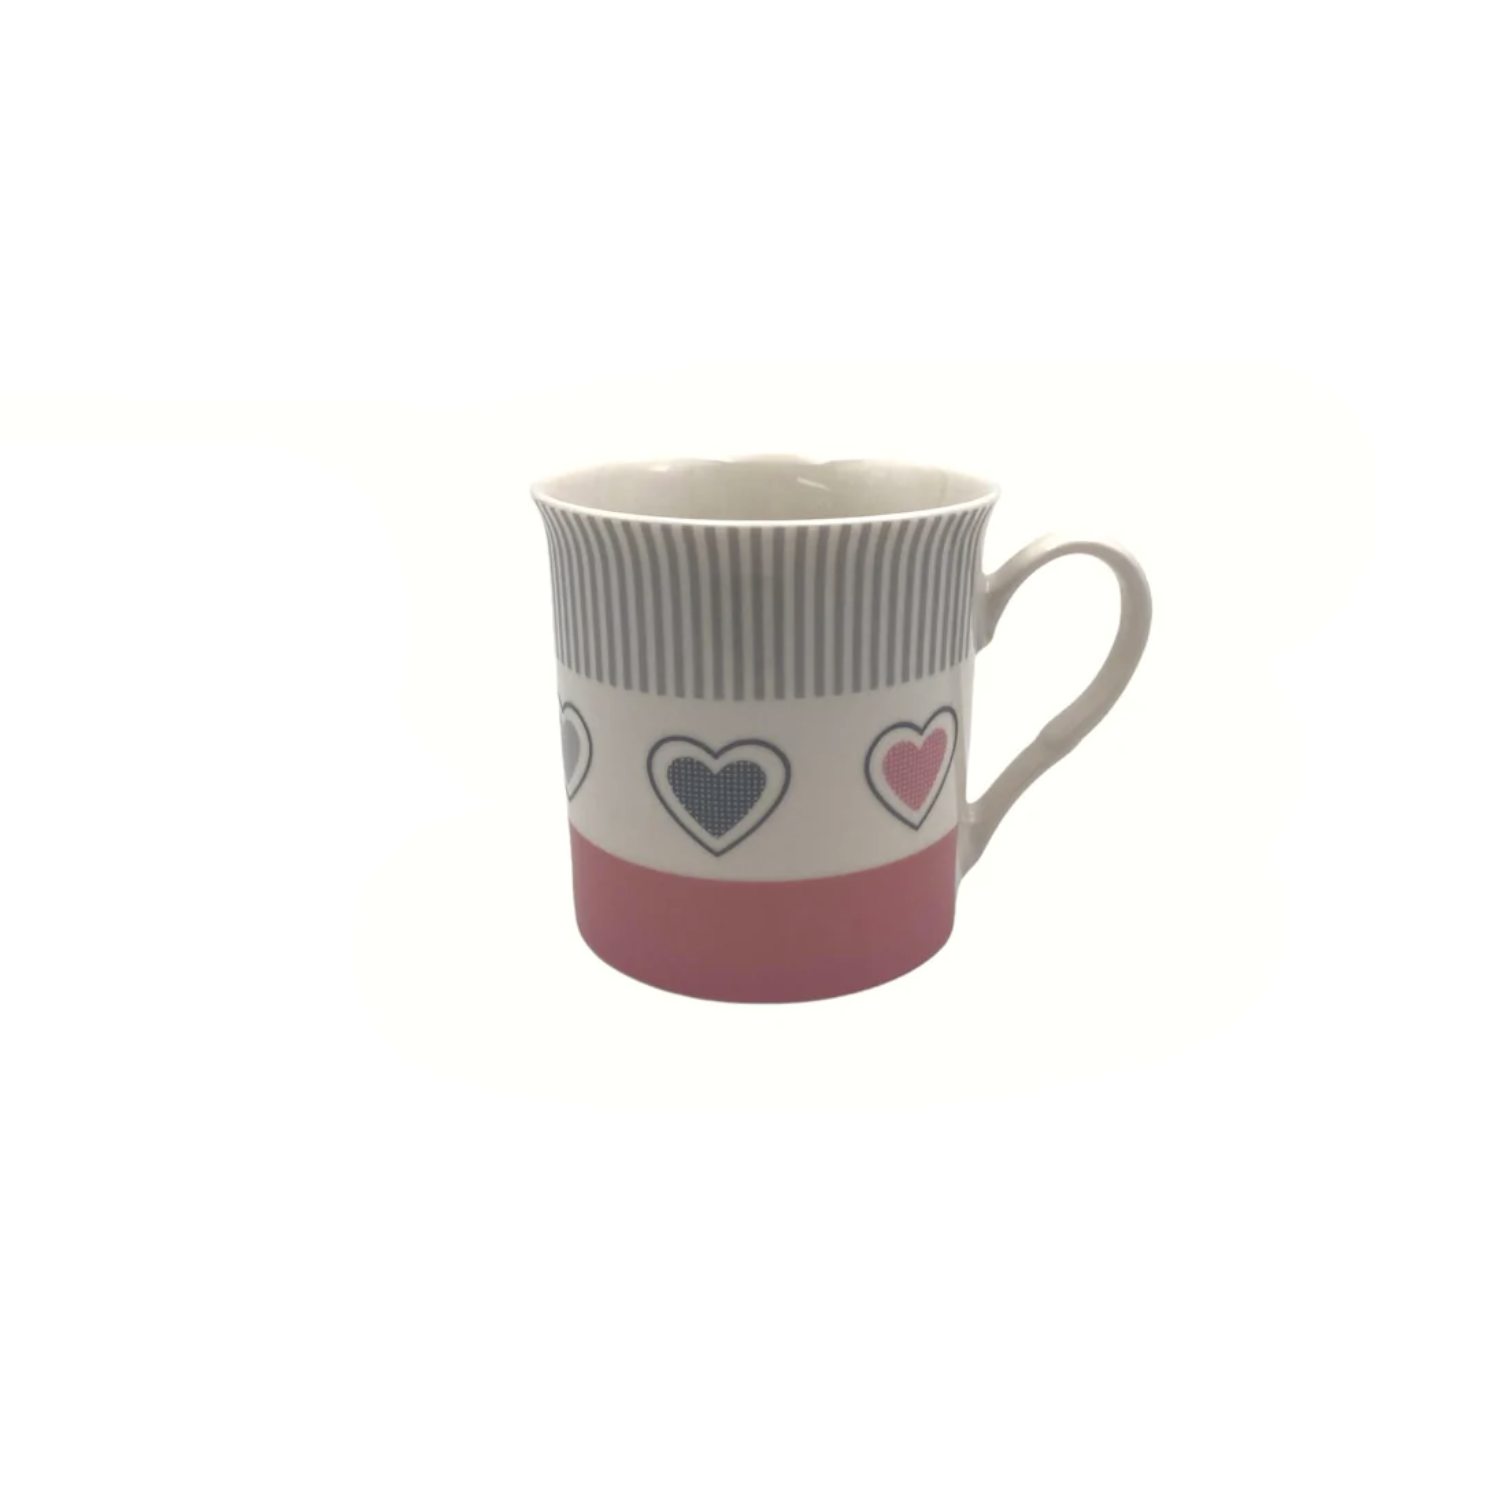 Short Porcelain Mug with Pink/Gray Heart Designs - Lunaz Shop